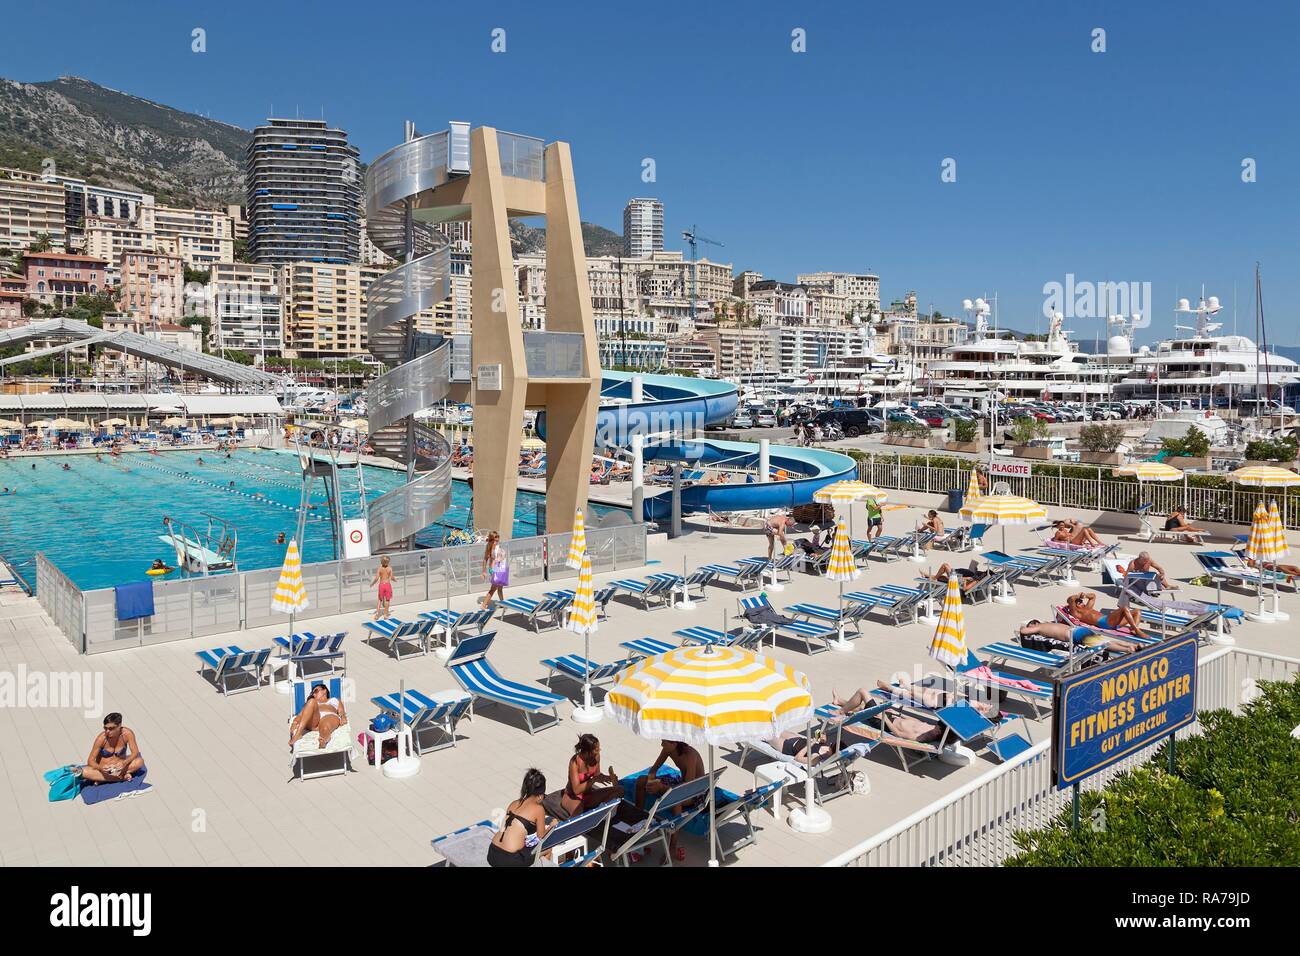 Outdoor swimming pool, Monaco Stock Photo